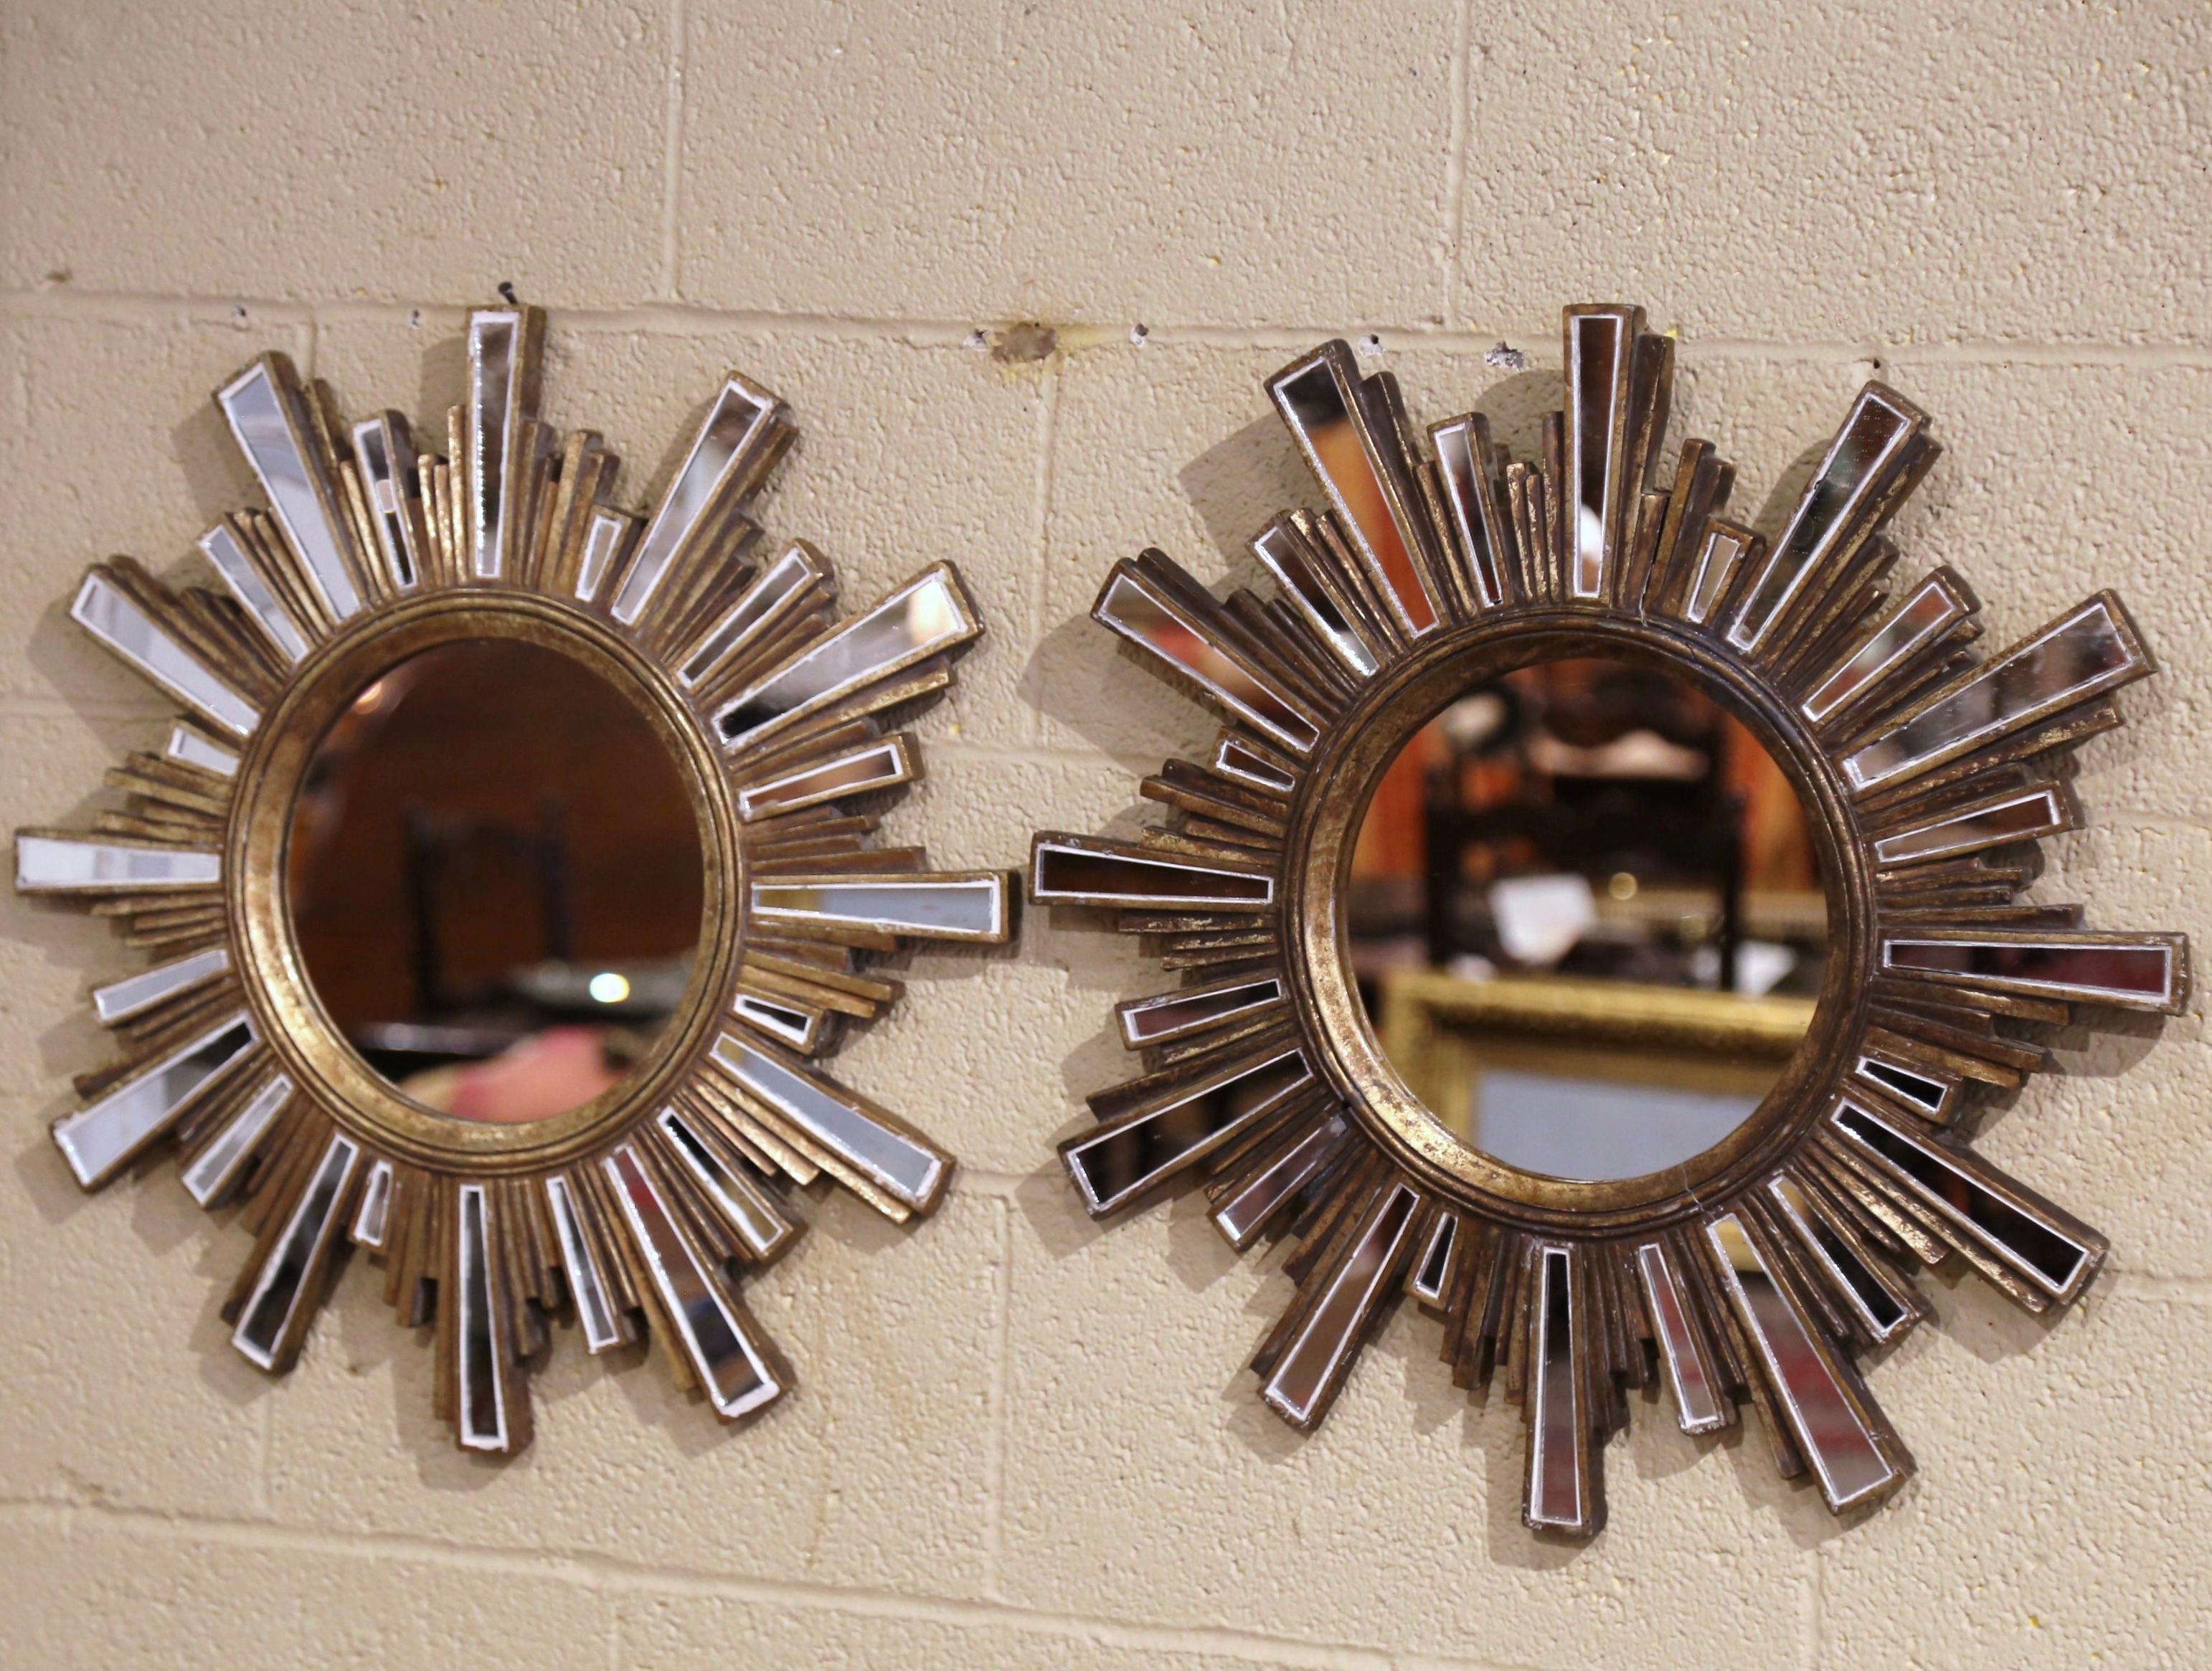 Dekorieren Sie einen Flur mit diesem eleganten Paar Sonnenspiegel. Um 1960 in Frankreich hergestellt, besteht jede Wanddekoration aus einem zentralen runden Spiegel, der von über 20 kleineren, handgeschnittenen Spiegeln mit unterschiedlichen